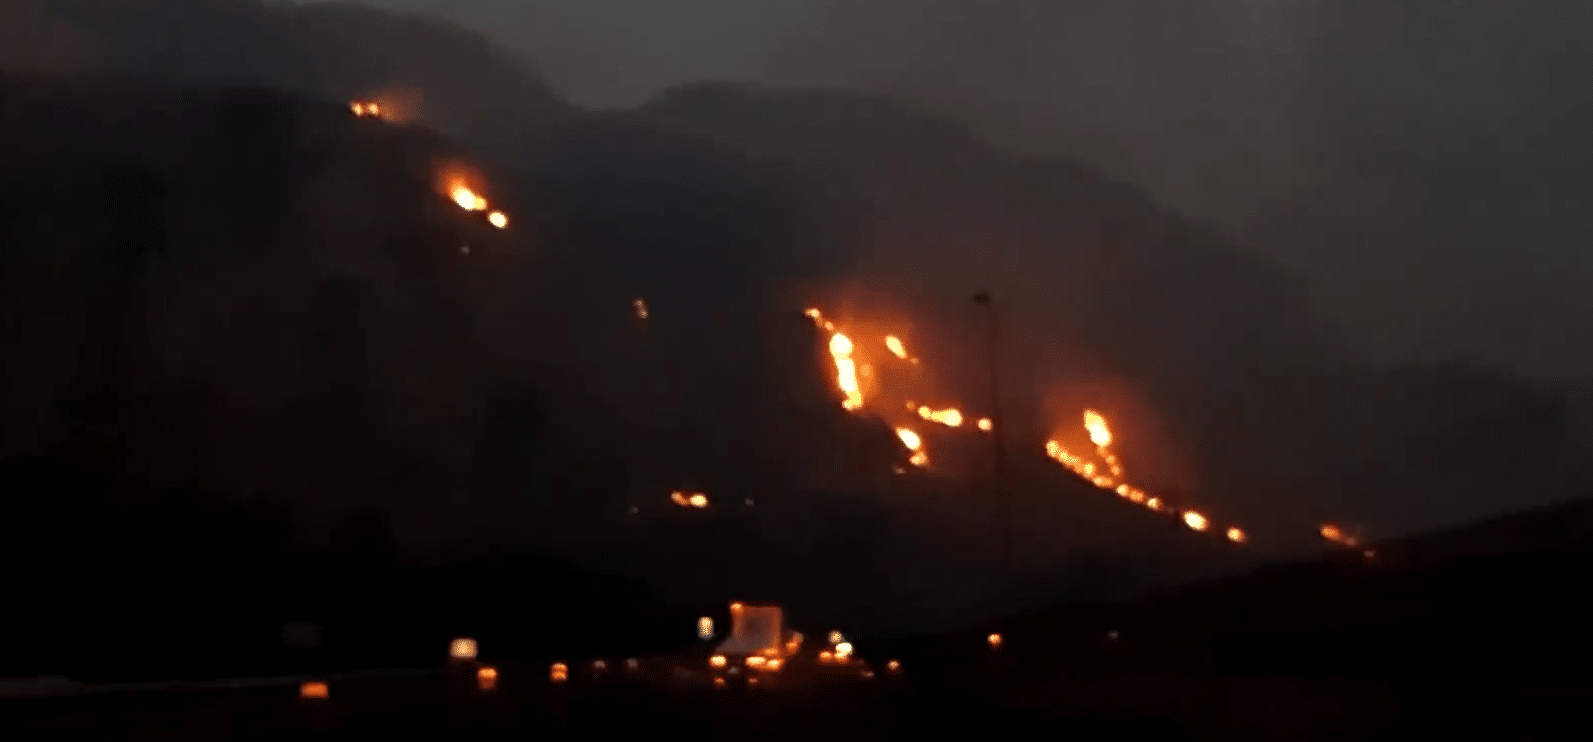 Ιταλία: Επτά νεκροί από τις πυρκαγιές – Στις φλόγες η Σικελία, χαλάζι στο Μιλάνο